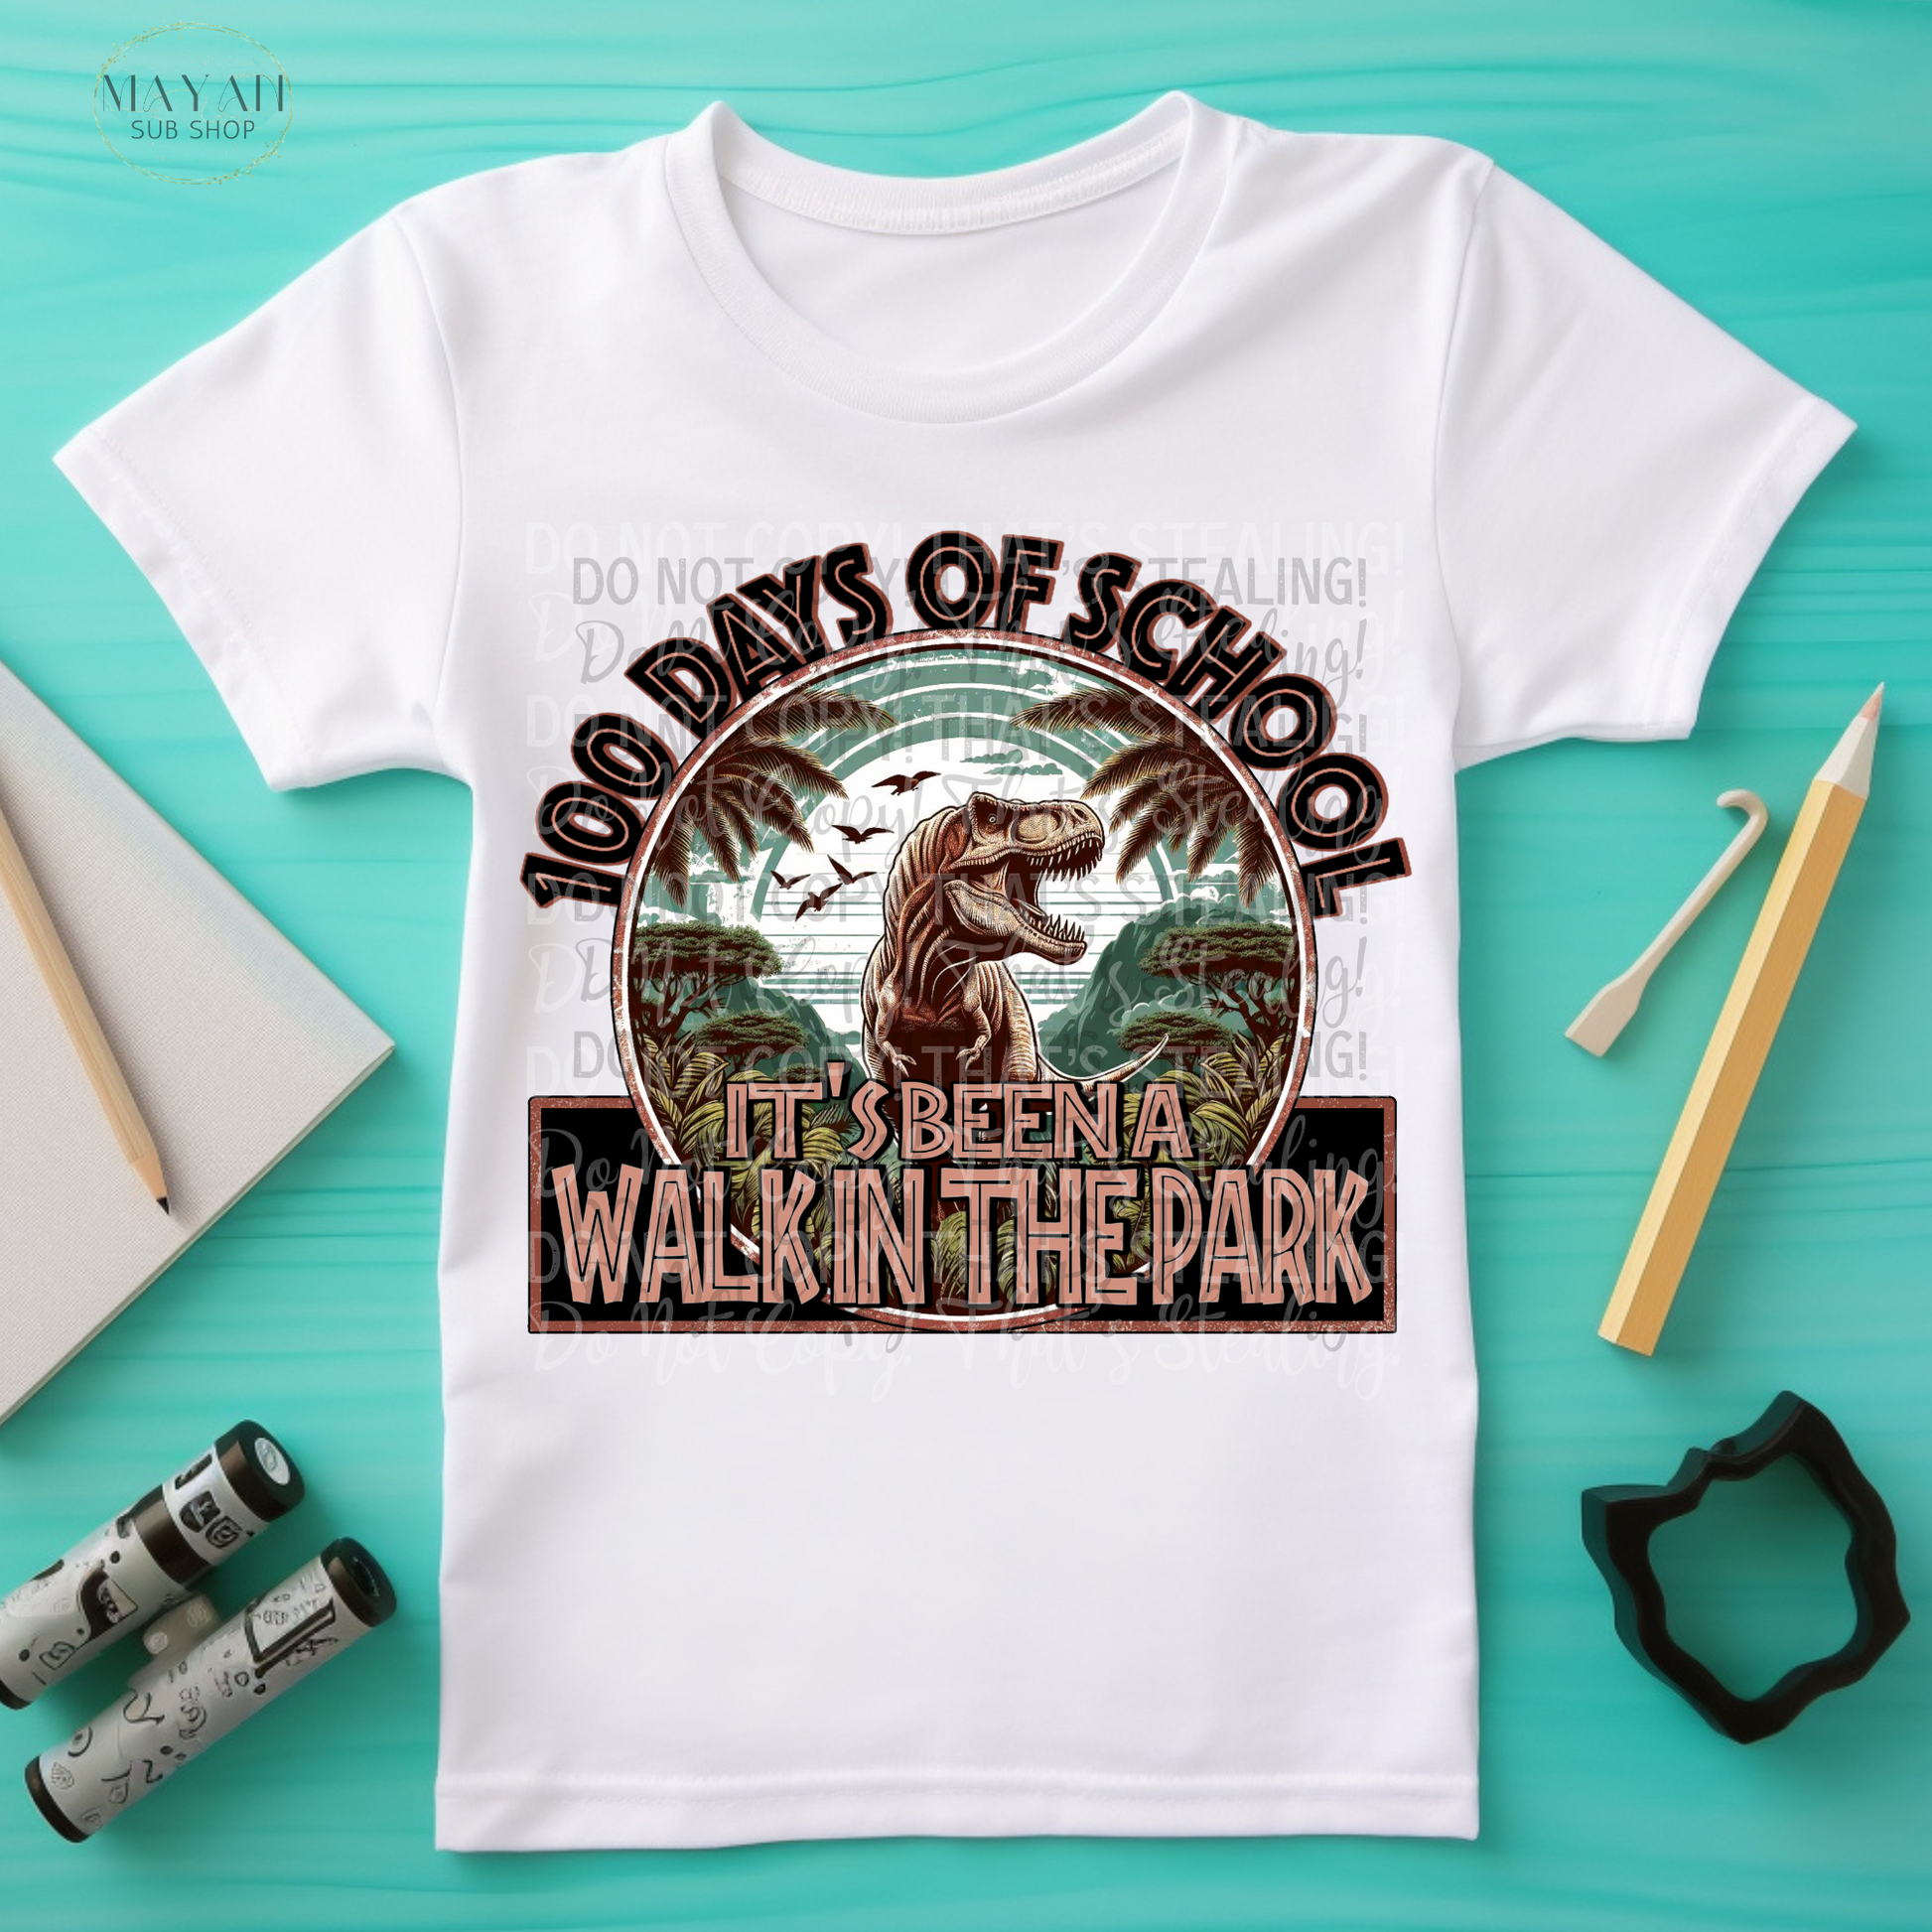 Walk in the park 100 days kids shirt. -Mayan Sub Shop